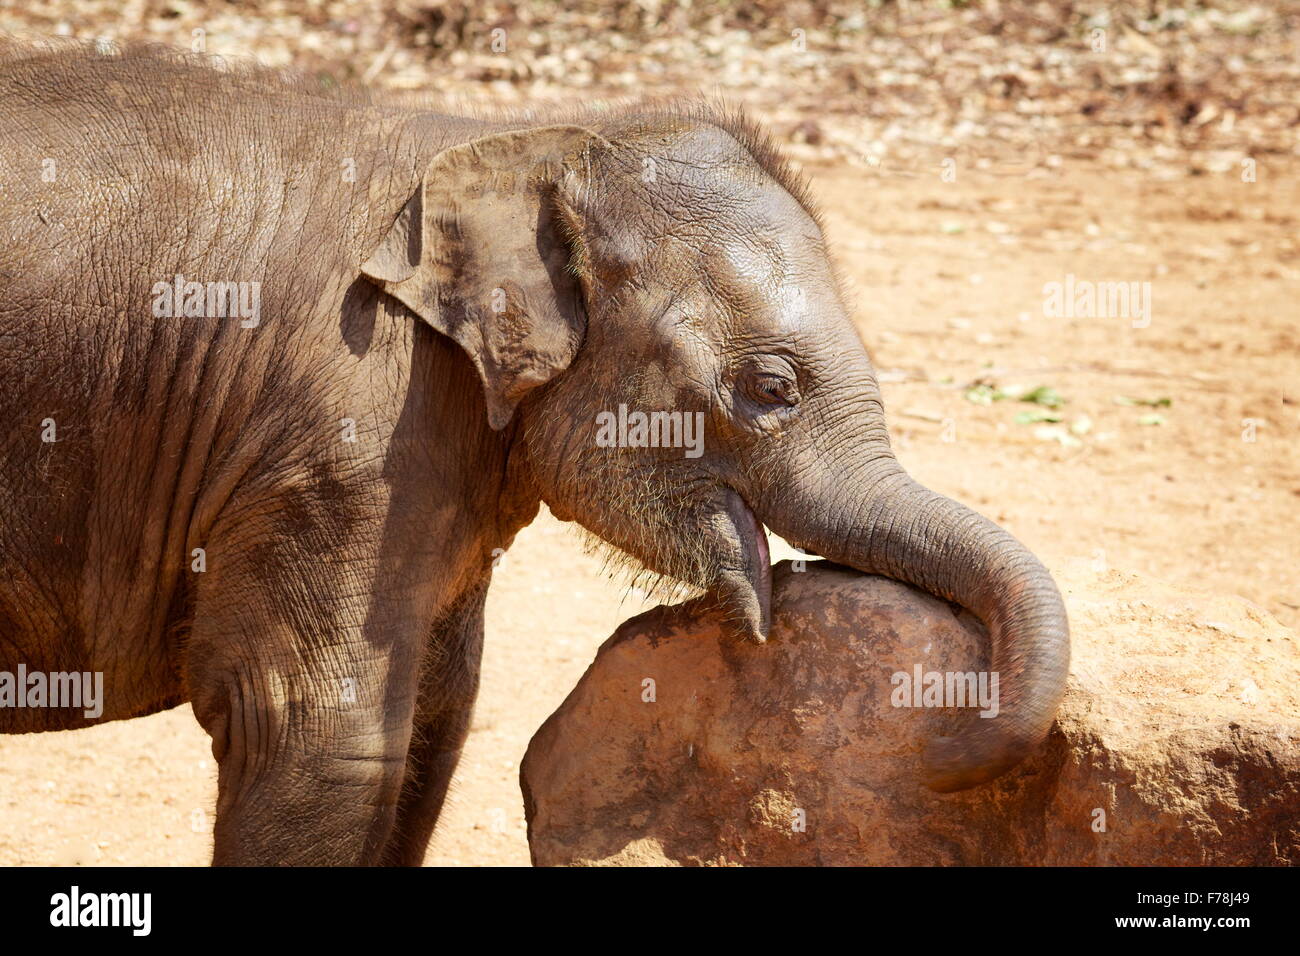 Small cute baby elephant , Sri Lanka Stock Photo